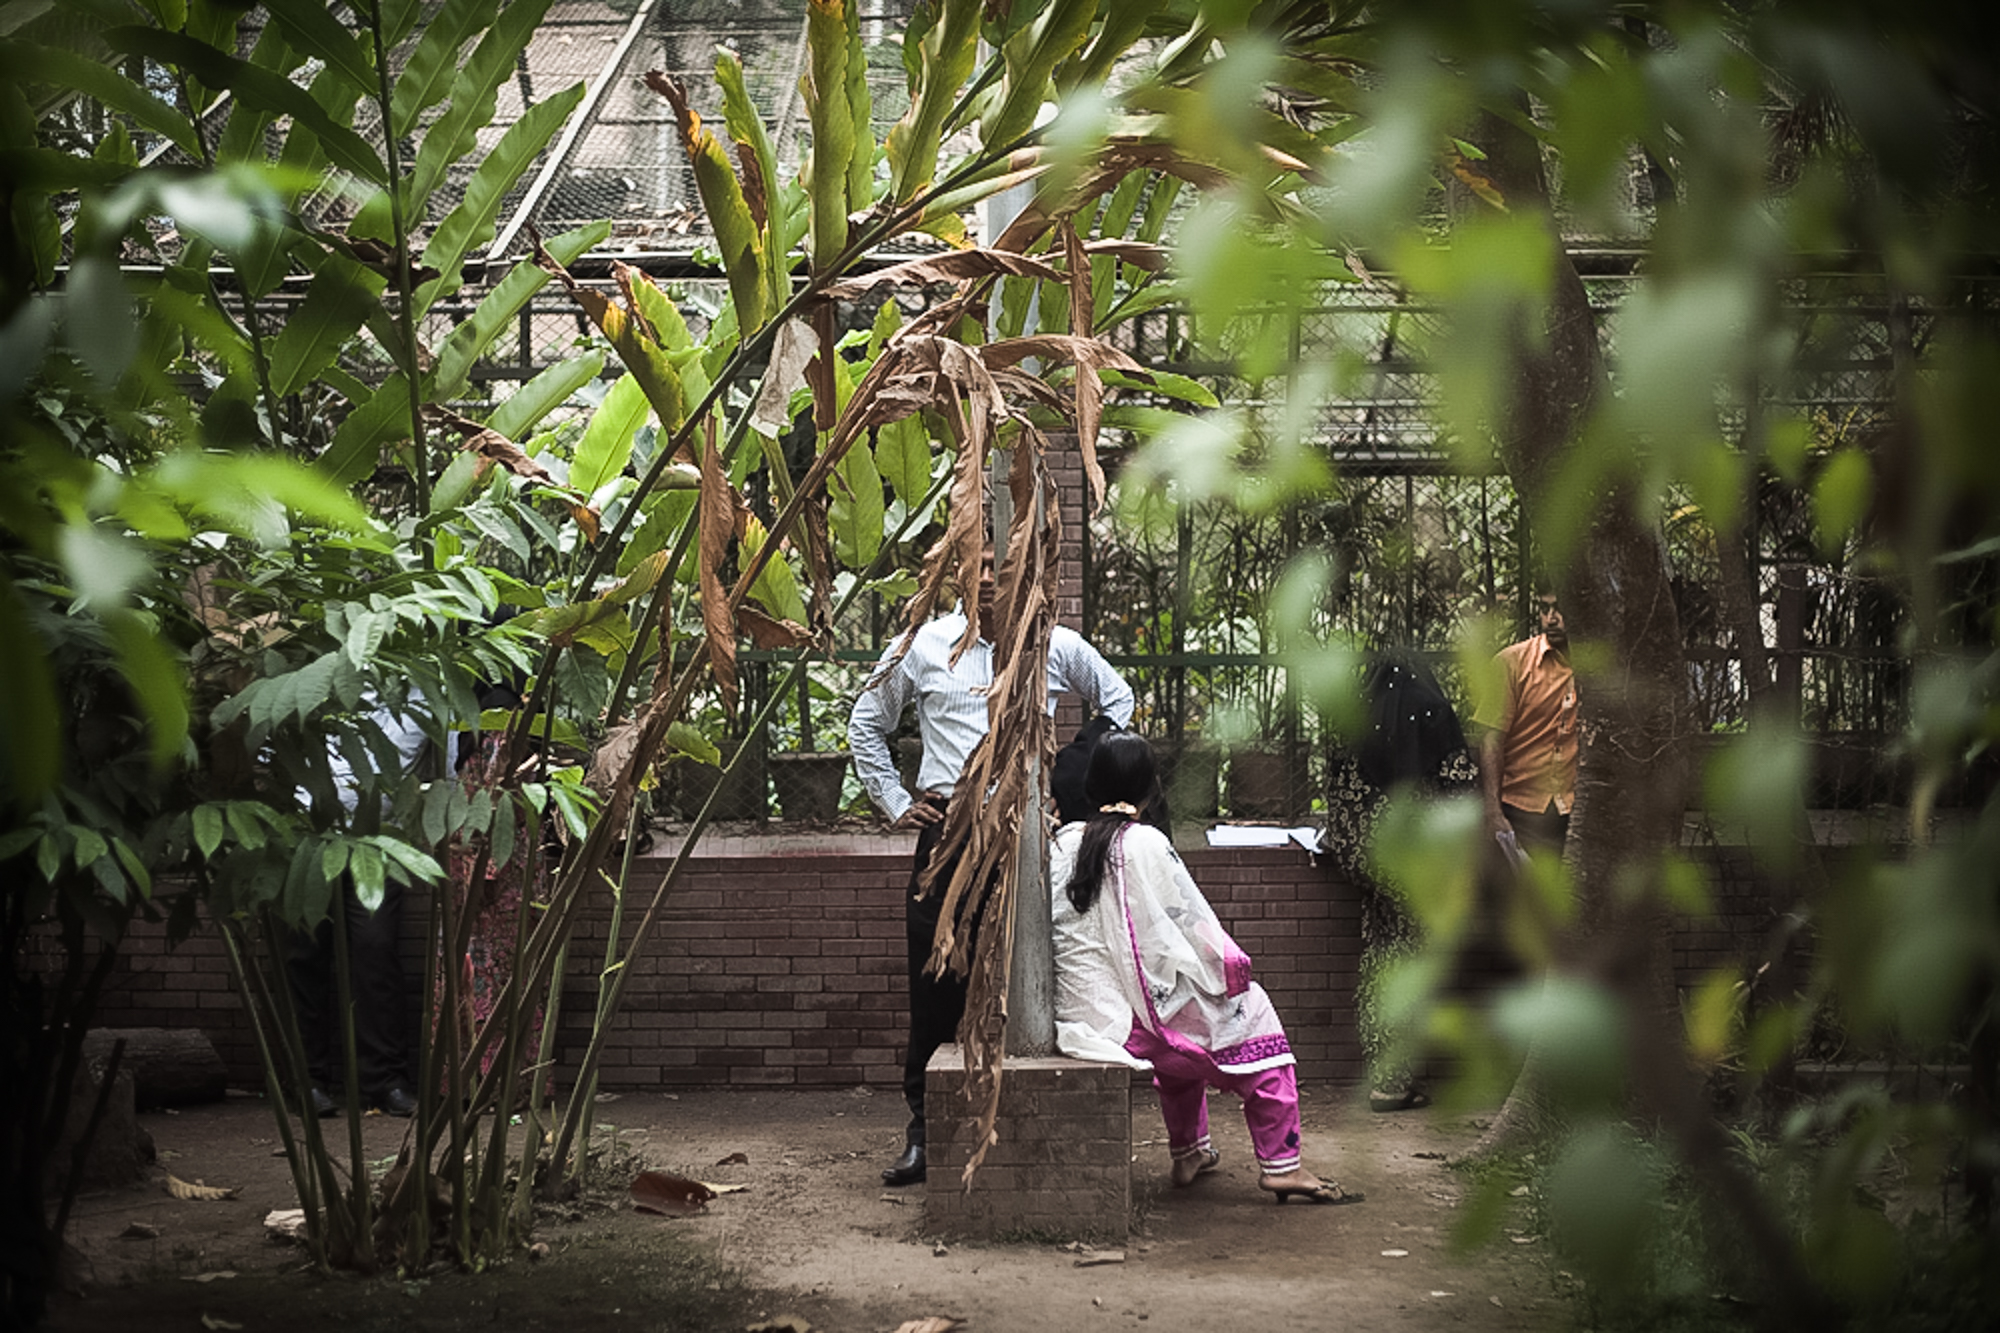 Baldah garden, Dhaka, Bangladesch, feb. 2012